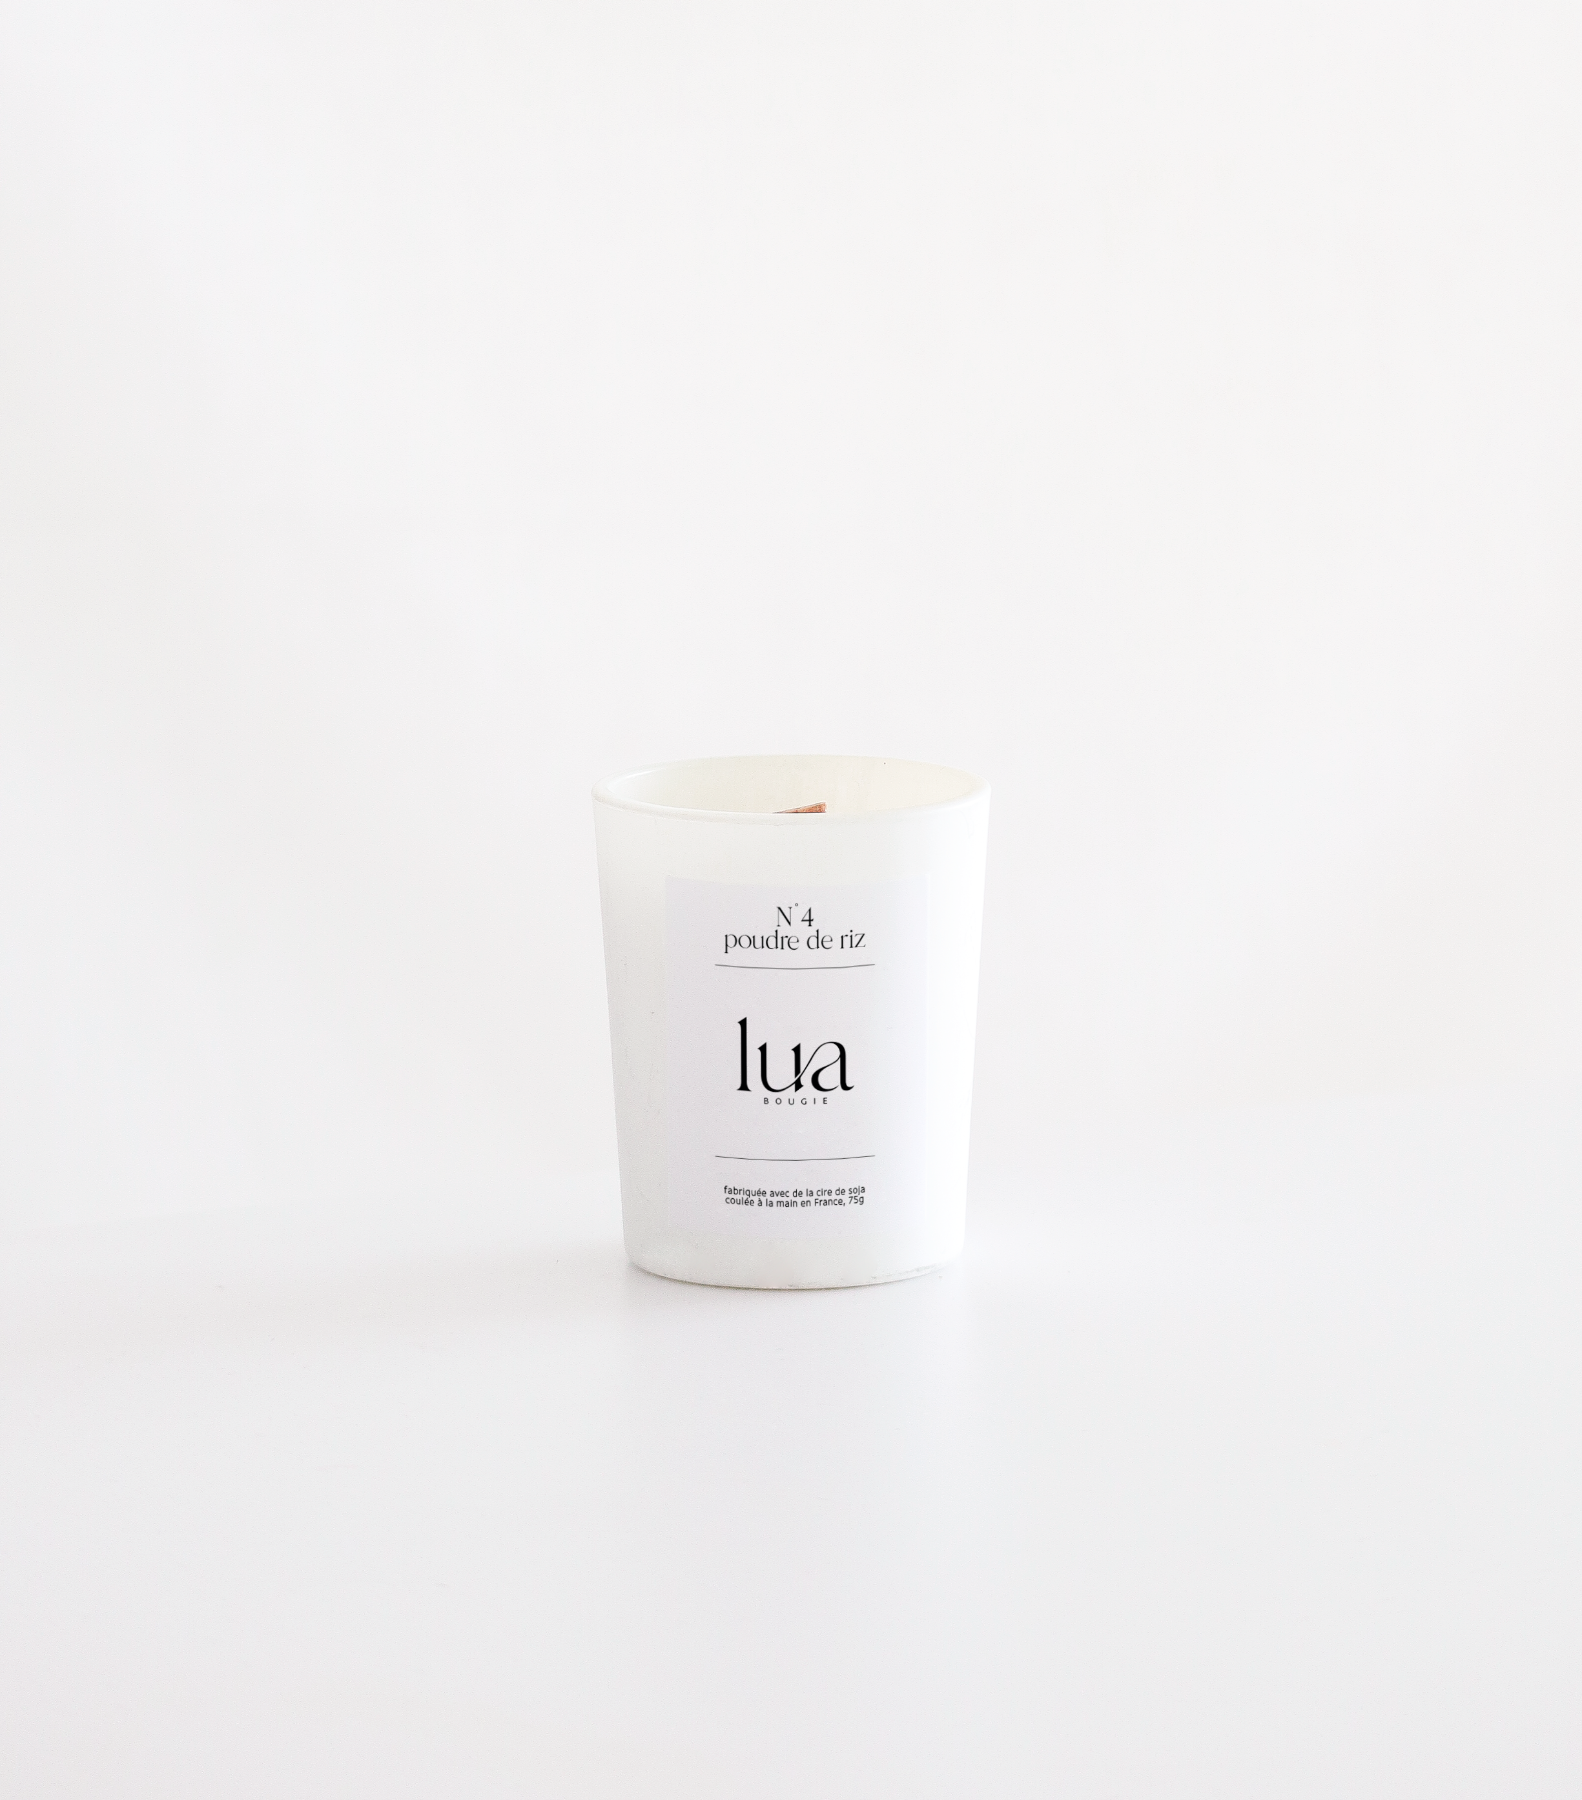 Bougie Lua parfumée et rechargeables, parfum poudre de riz, contenant blanc 75g. 